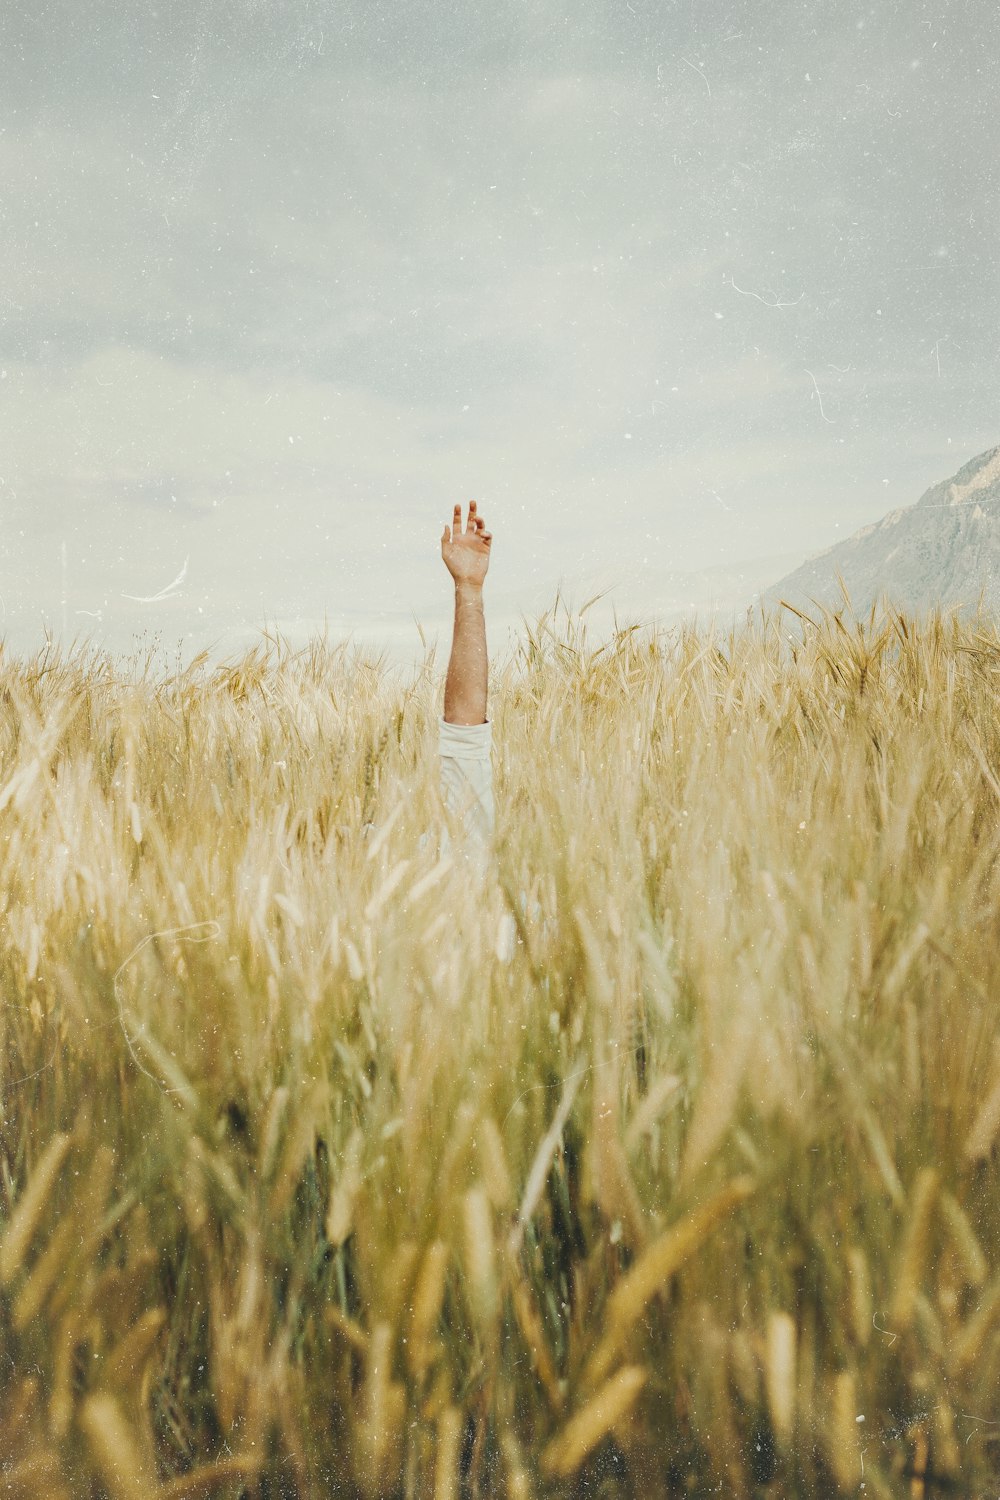 Persona in pantaloncini bianchi in piedi sul campo di erba marrone durante il giorno